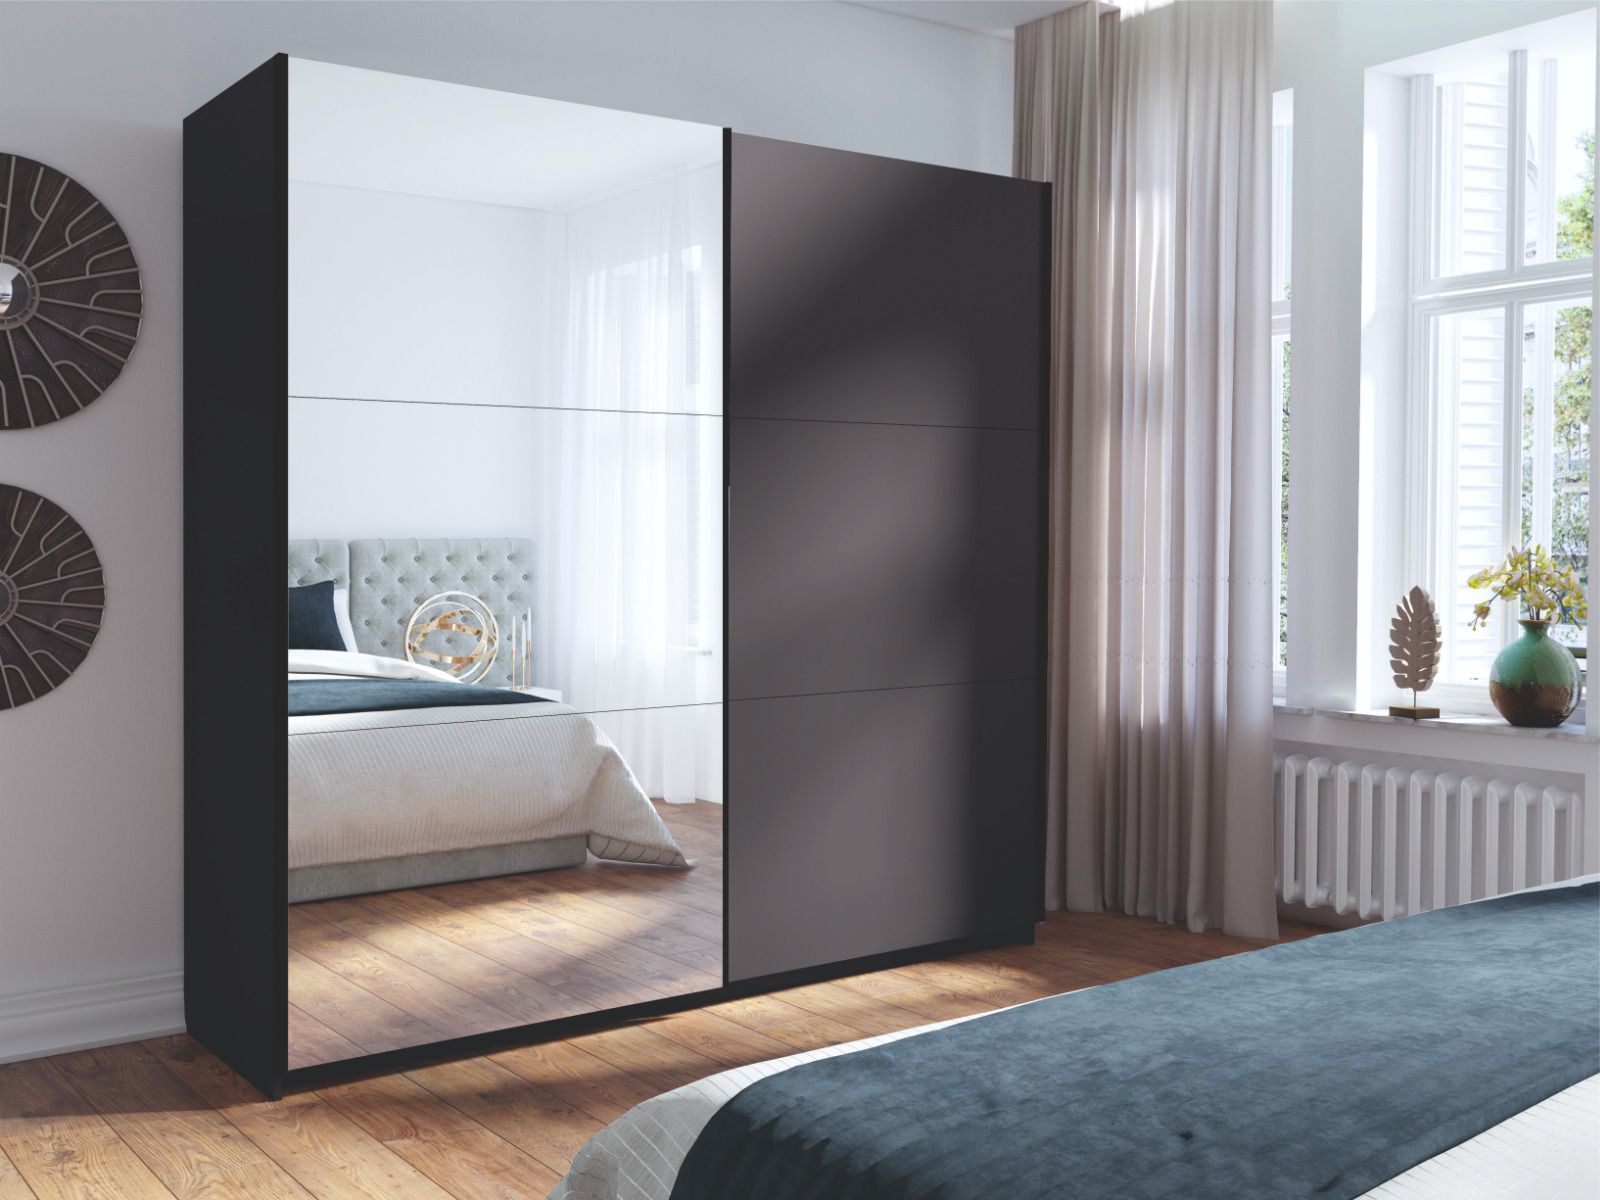 Schiebetürenschrank mit Spiegel, Farbe Grafit segmentiert, Kleiderschrank, 1 Kleiderstange, 6 Fächer, 1,5 Meter breit, für Schlafzimmer, Schiebetüren